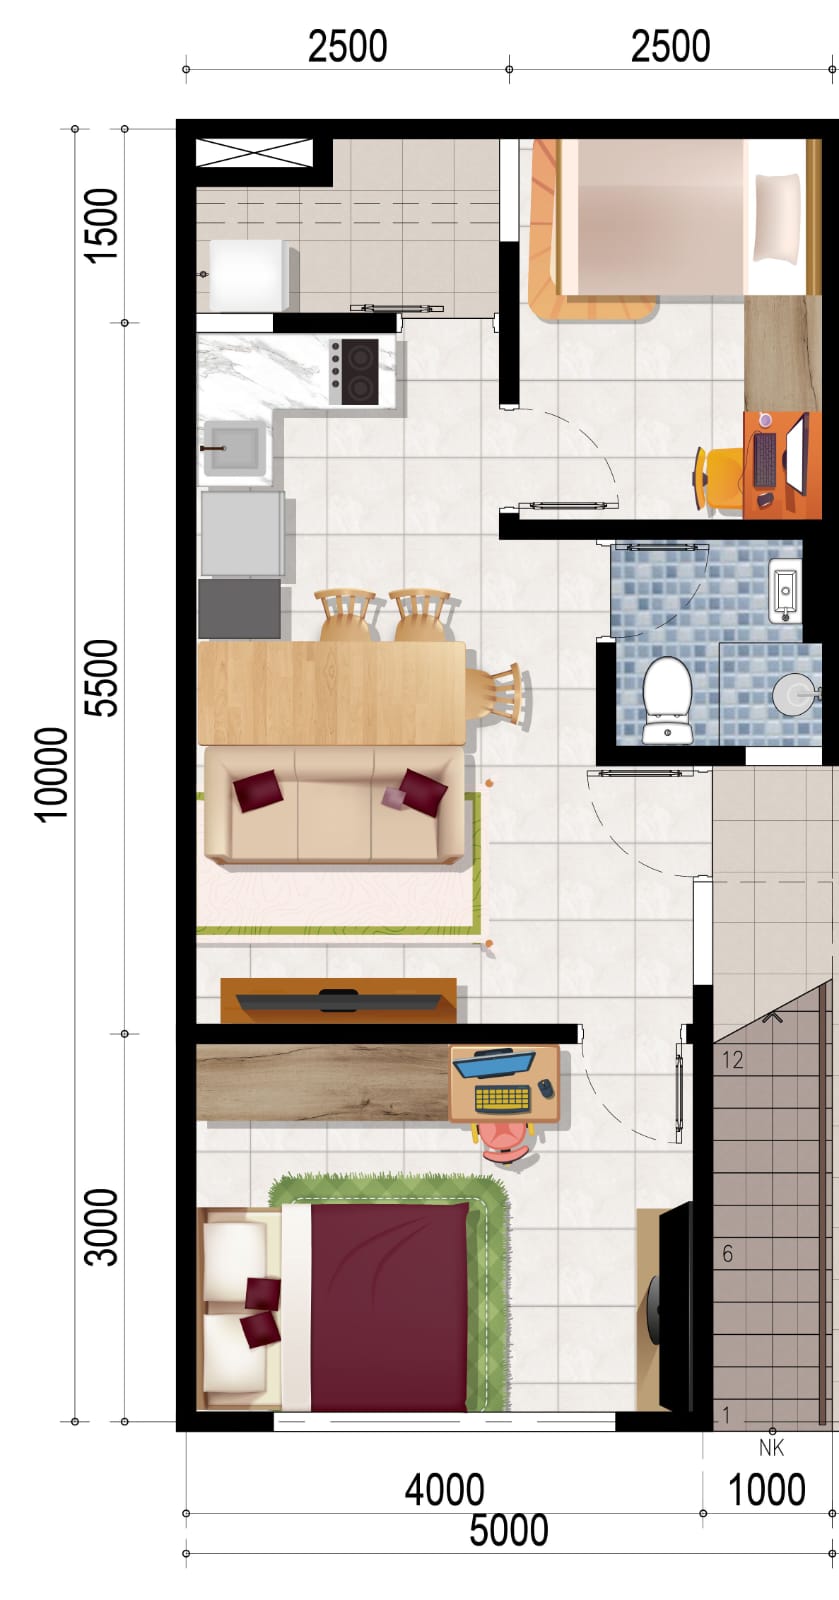 Ilustrasi 3D Lantai 1 Green Royal Apartemen Condo House